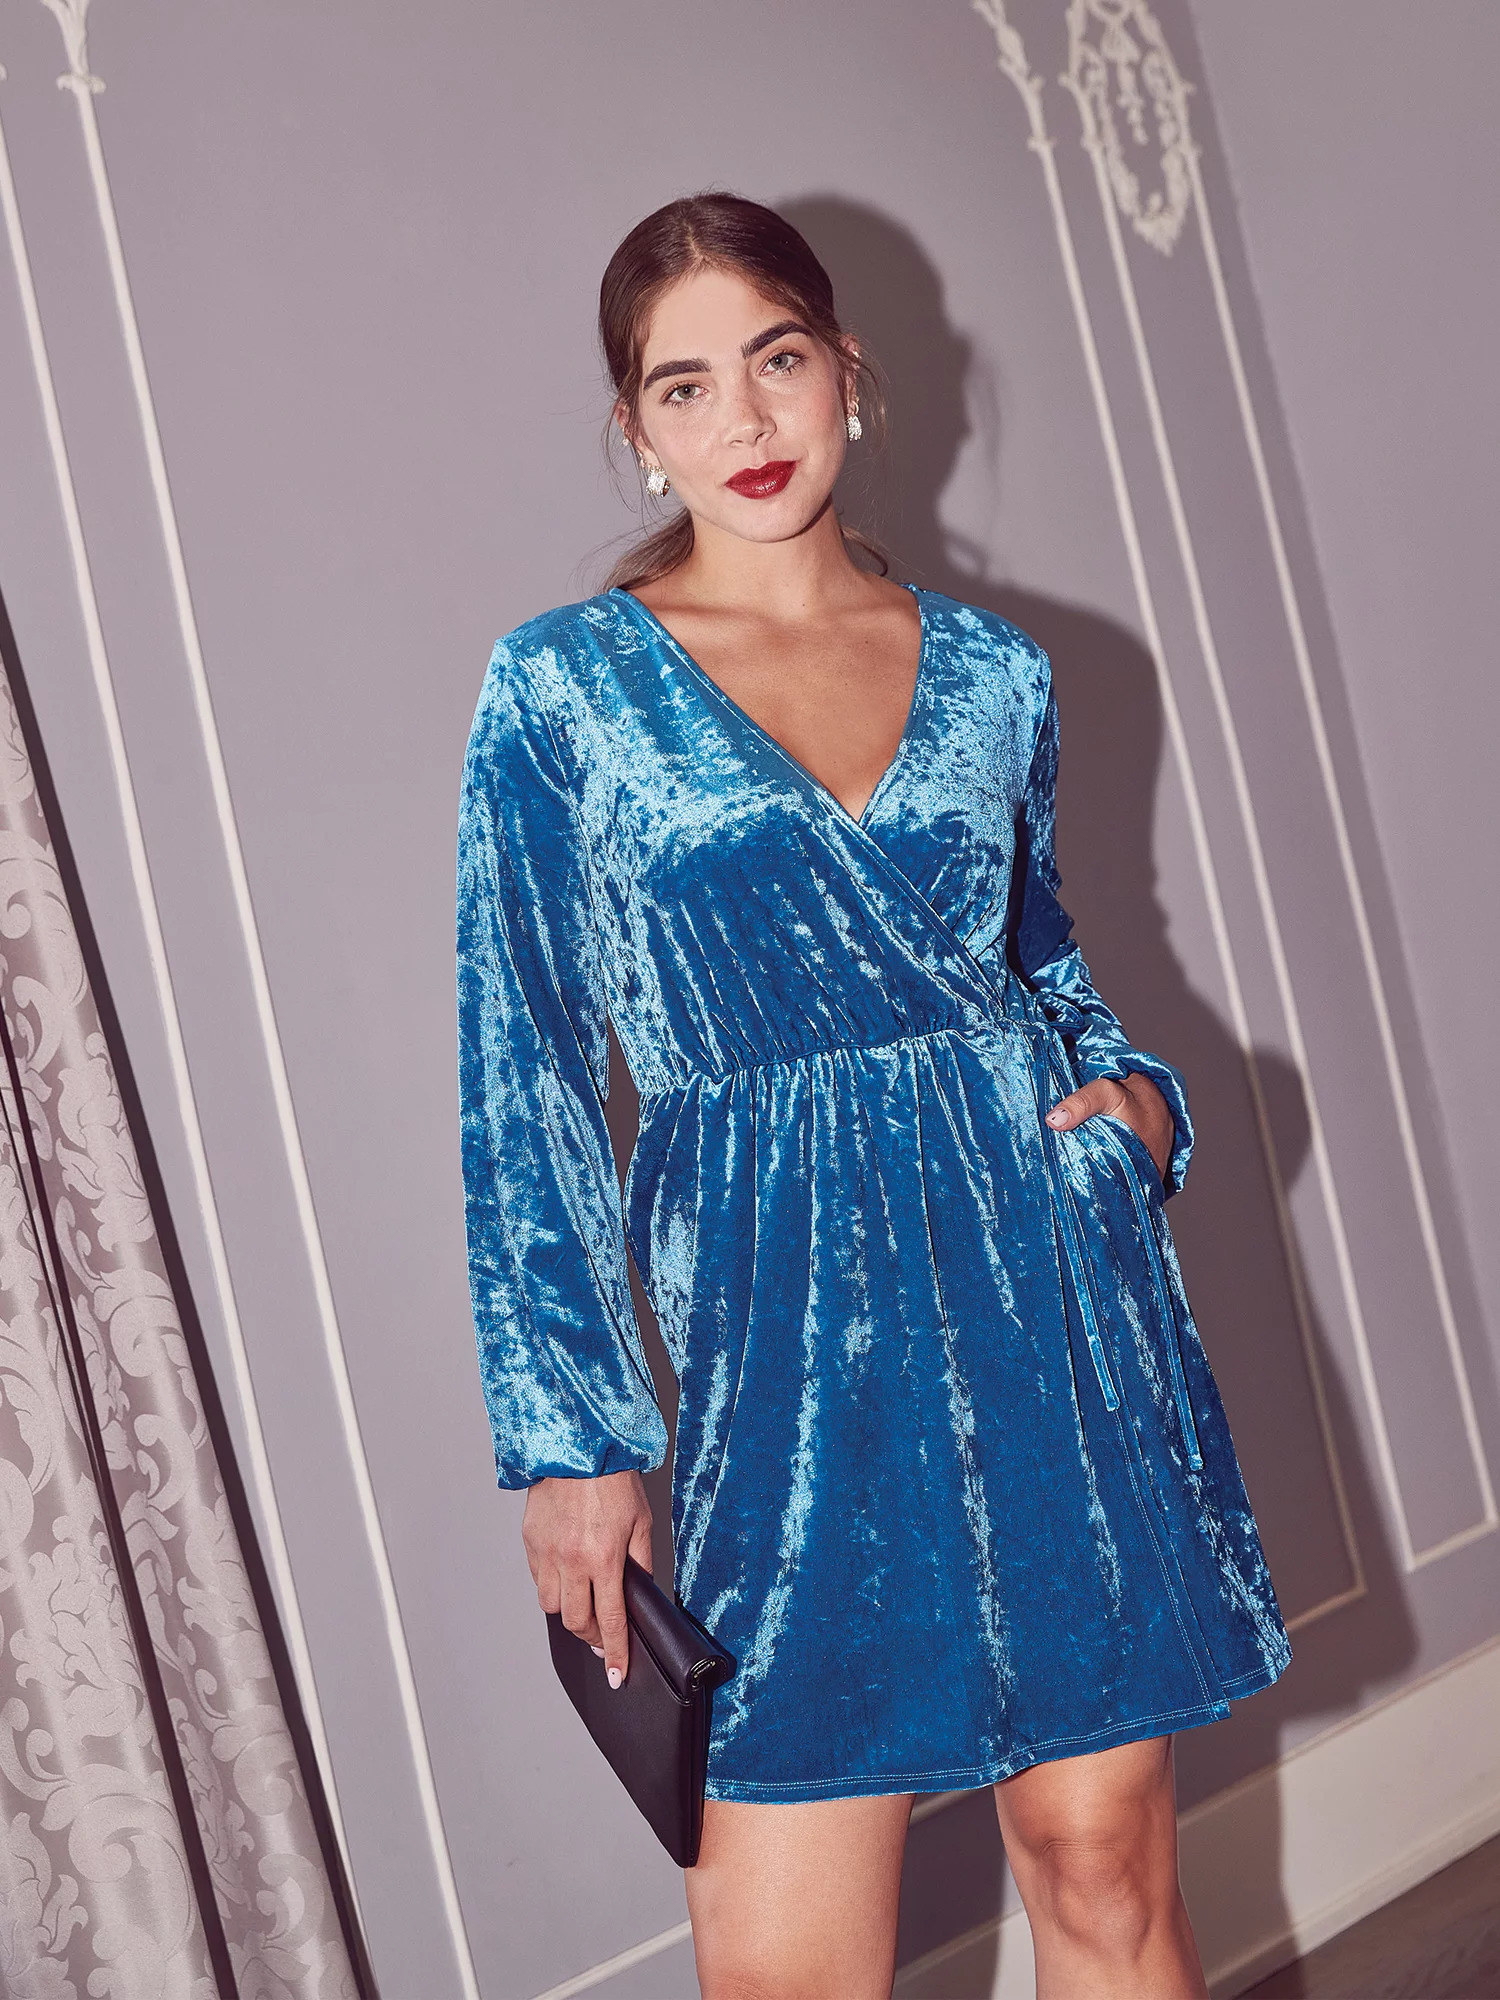 Model wearing the Mykonos blue dress